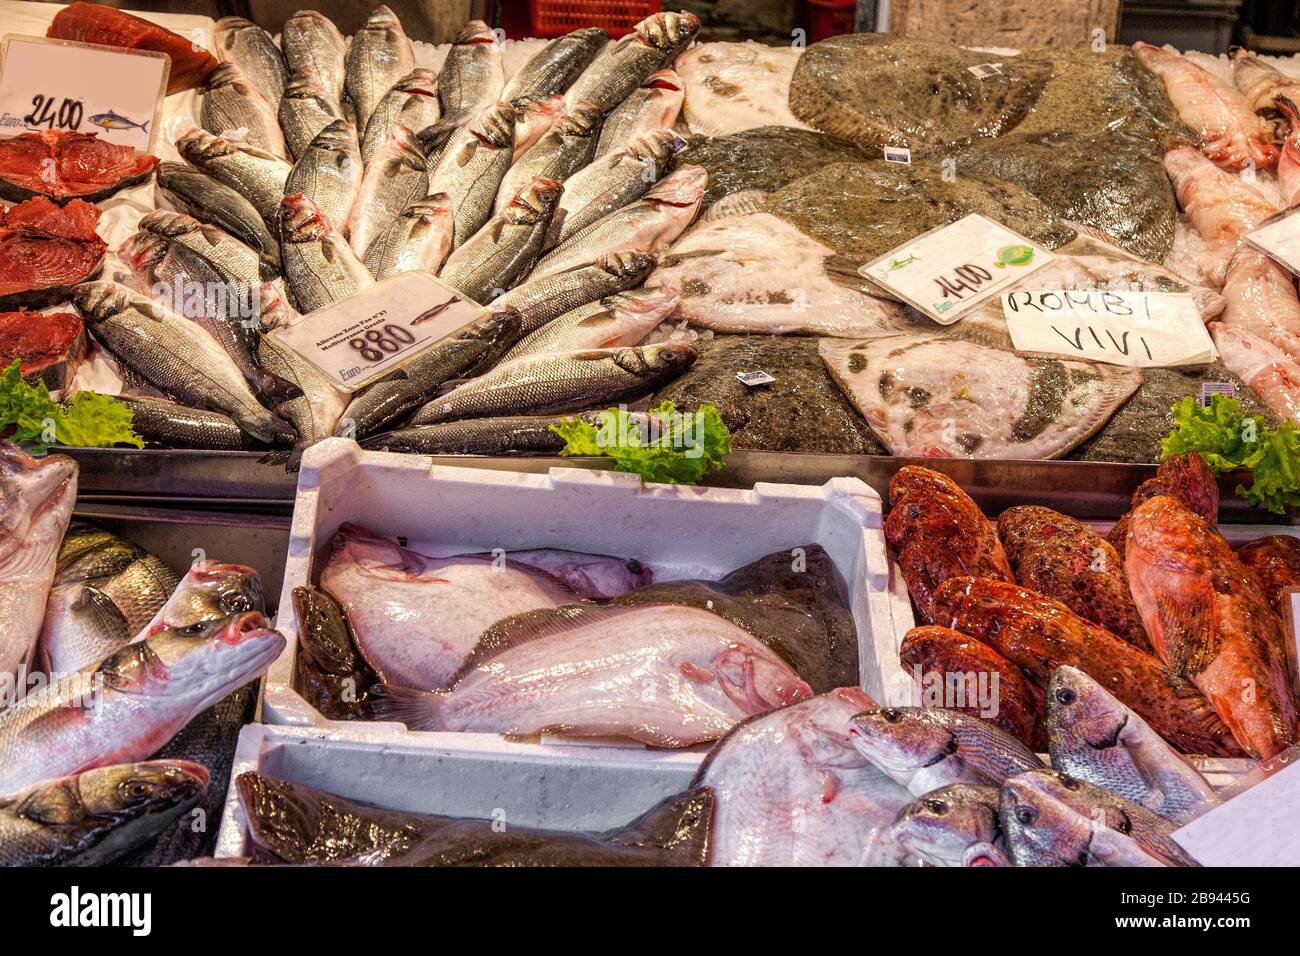 Outdoor fish market in Venice, Italy Stock Photo